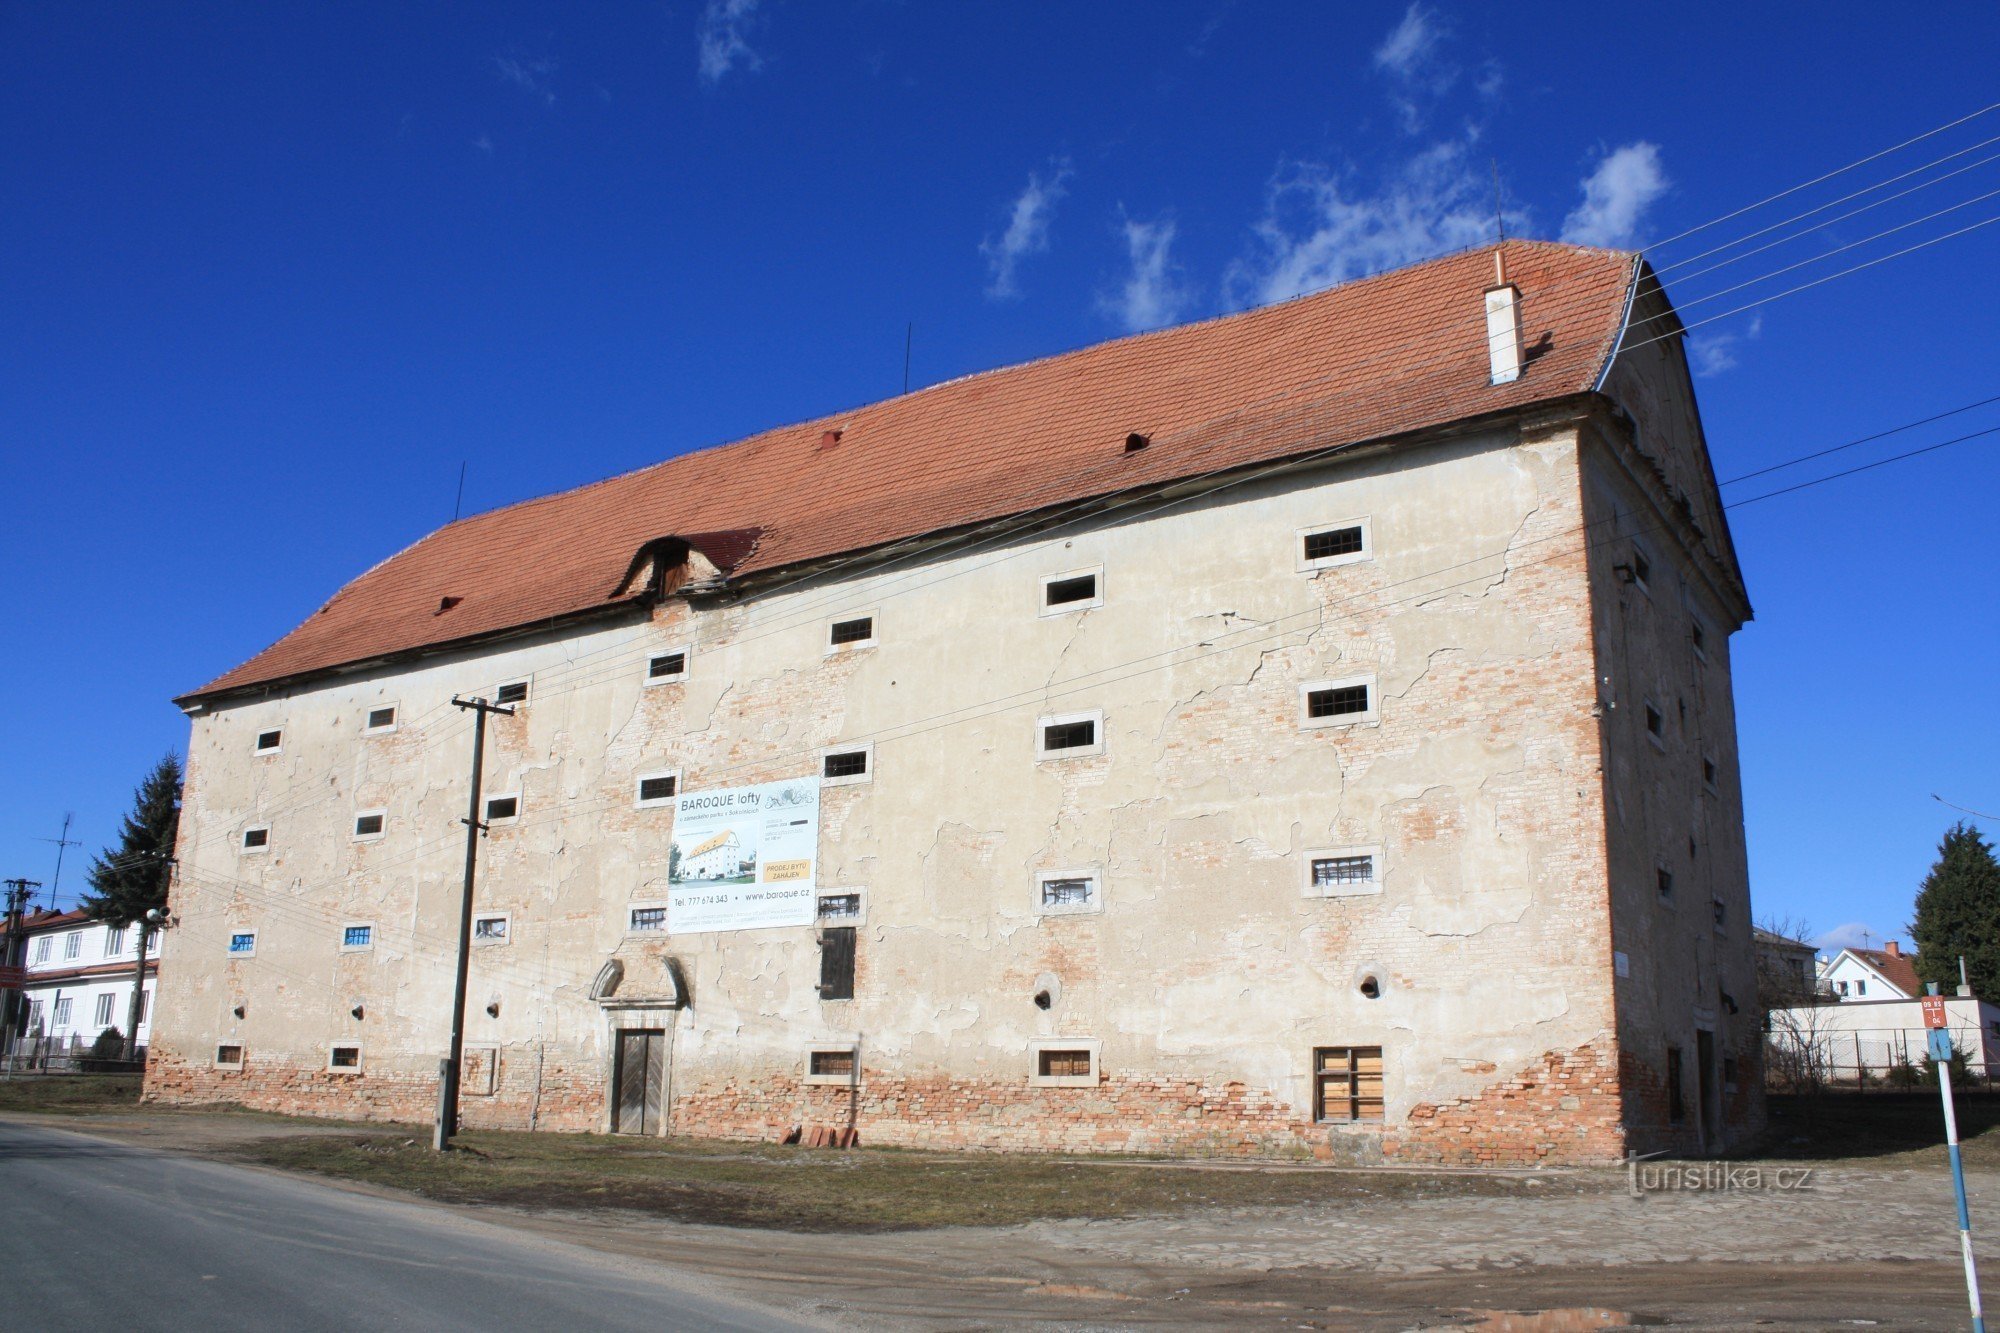 Sokolnice - barokke kasteelgraanschuur